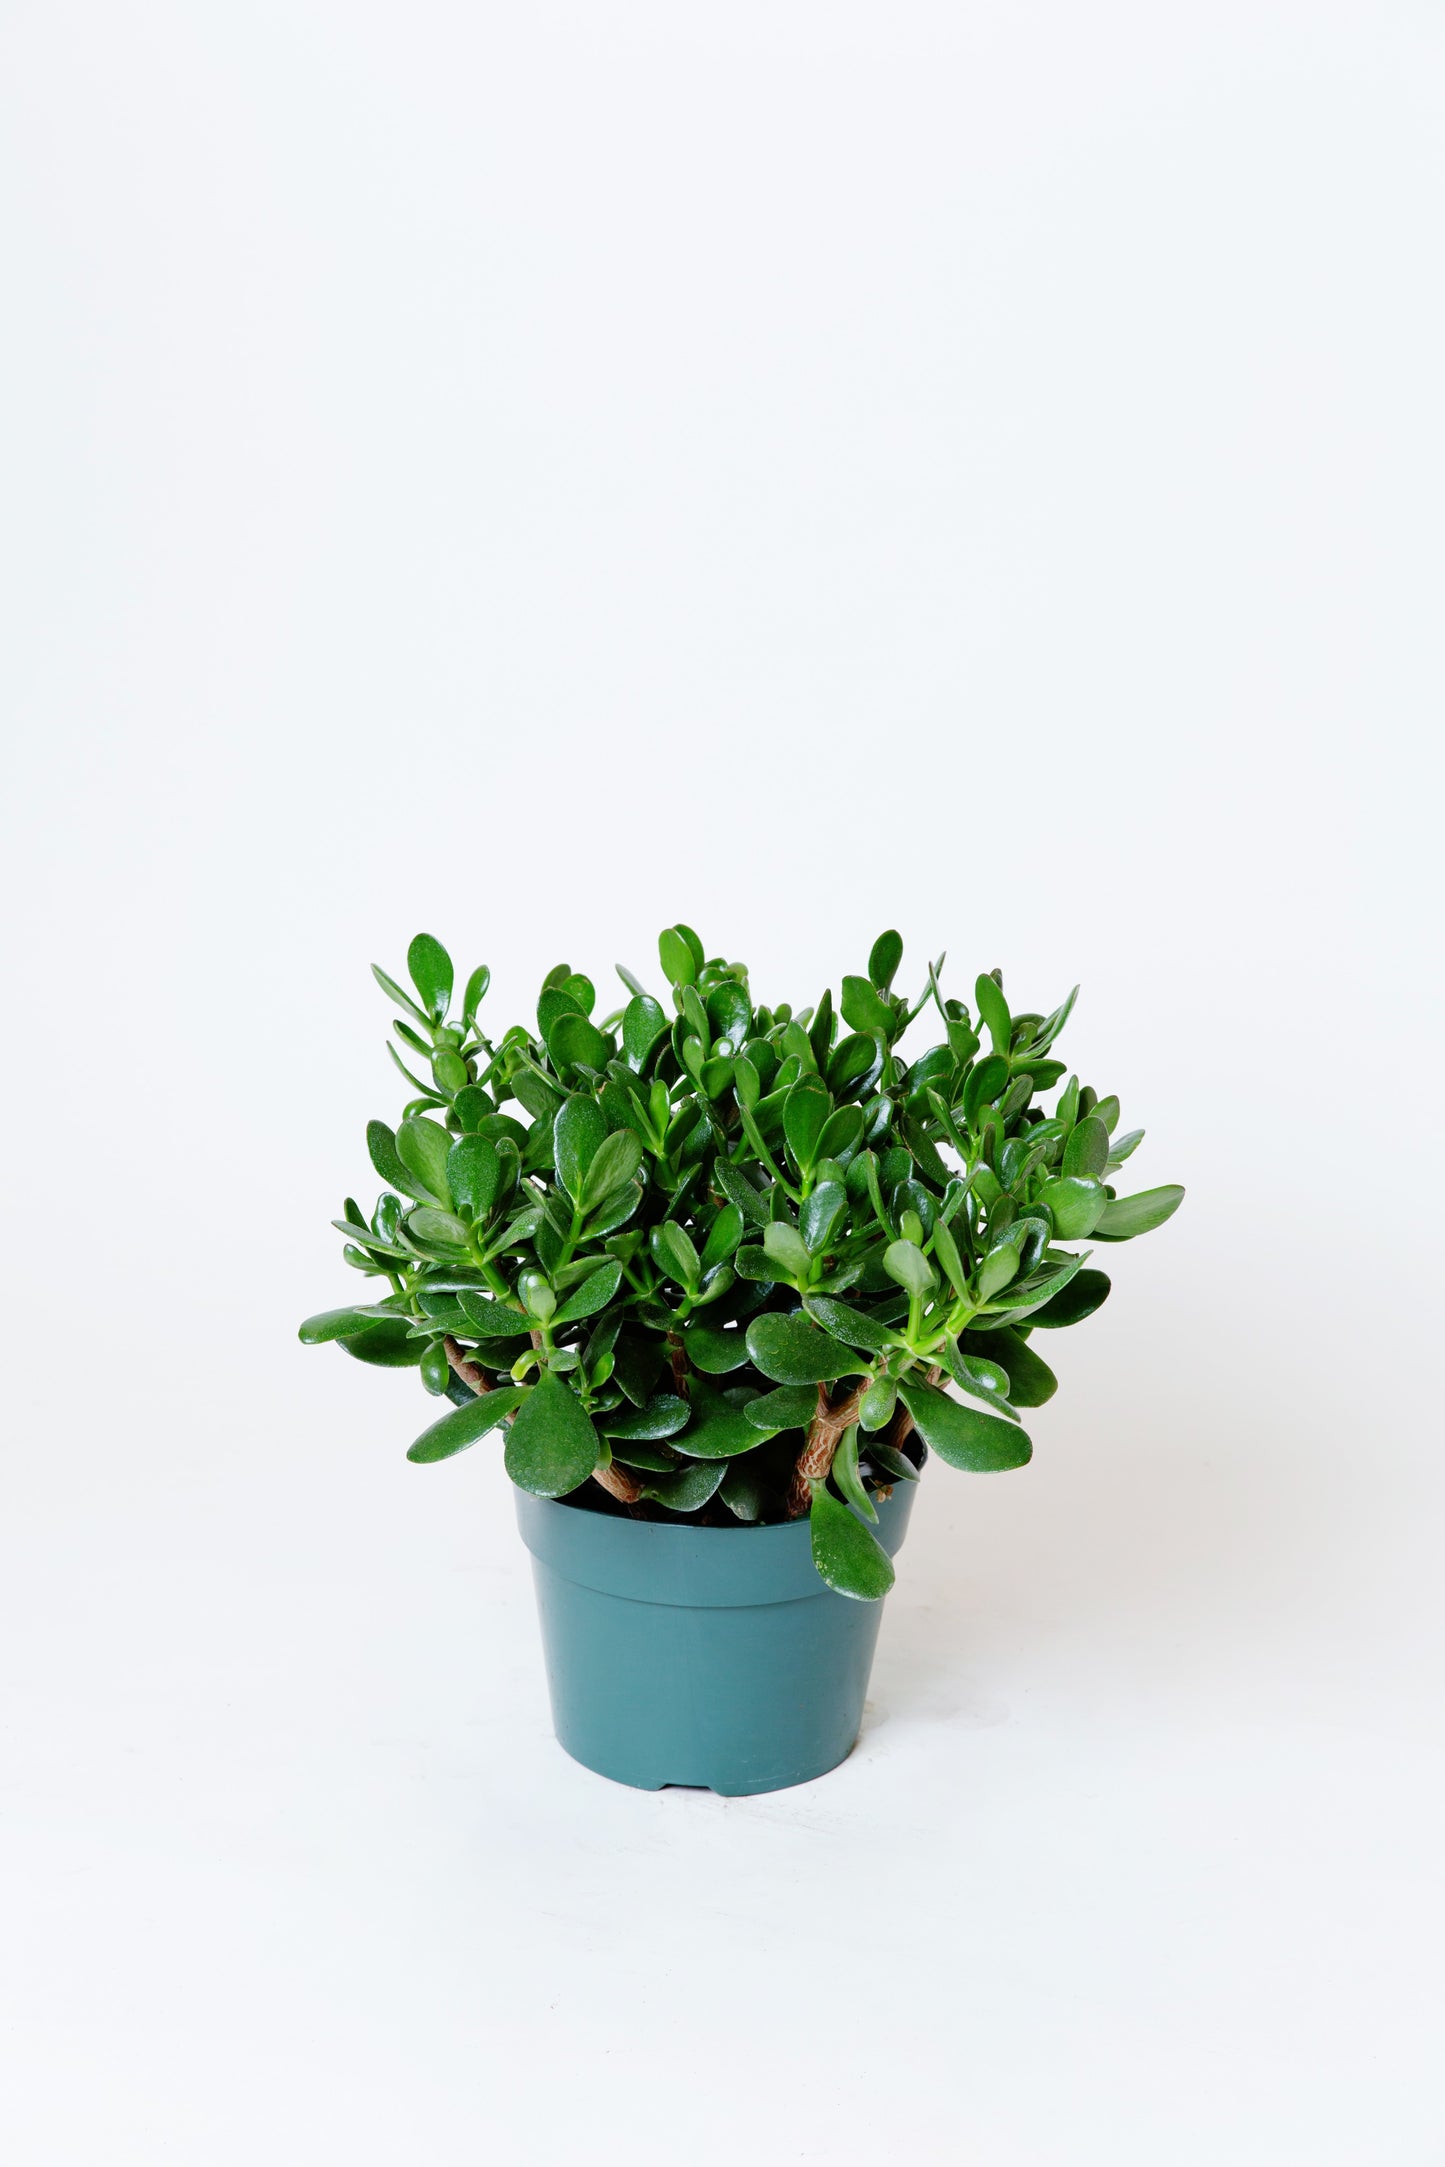 Jade Plant | Crassula ovata